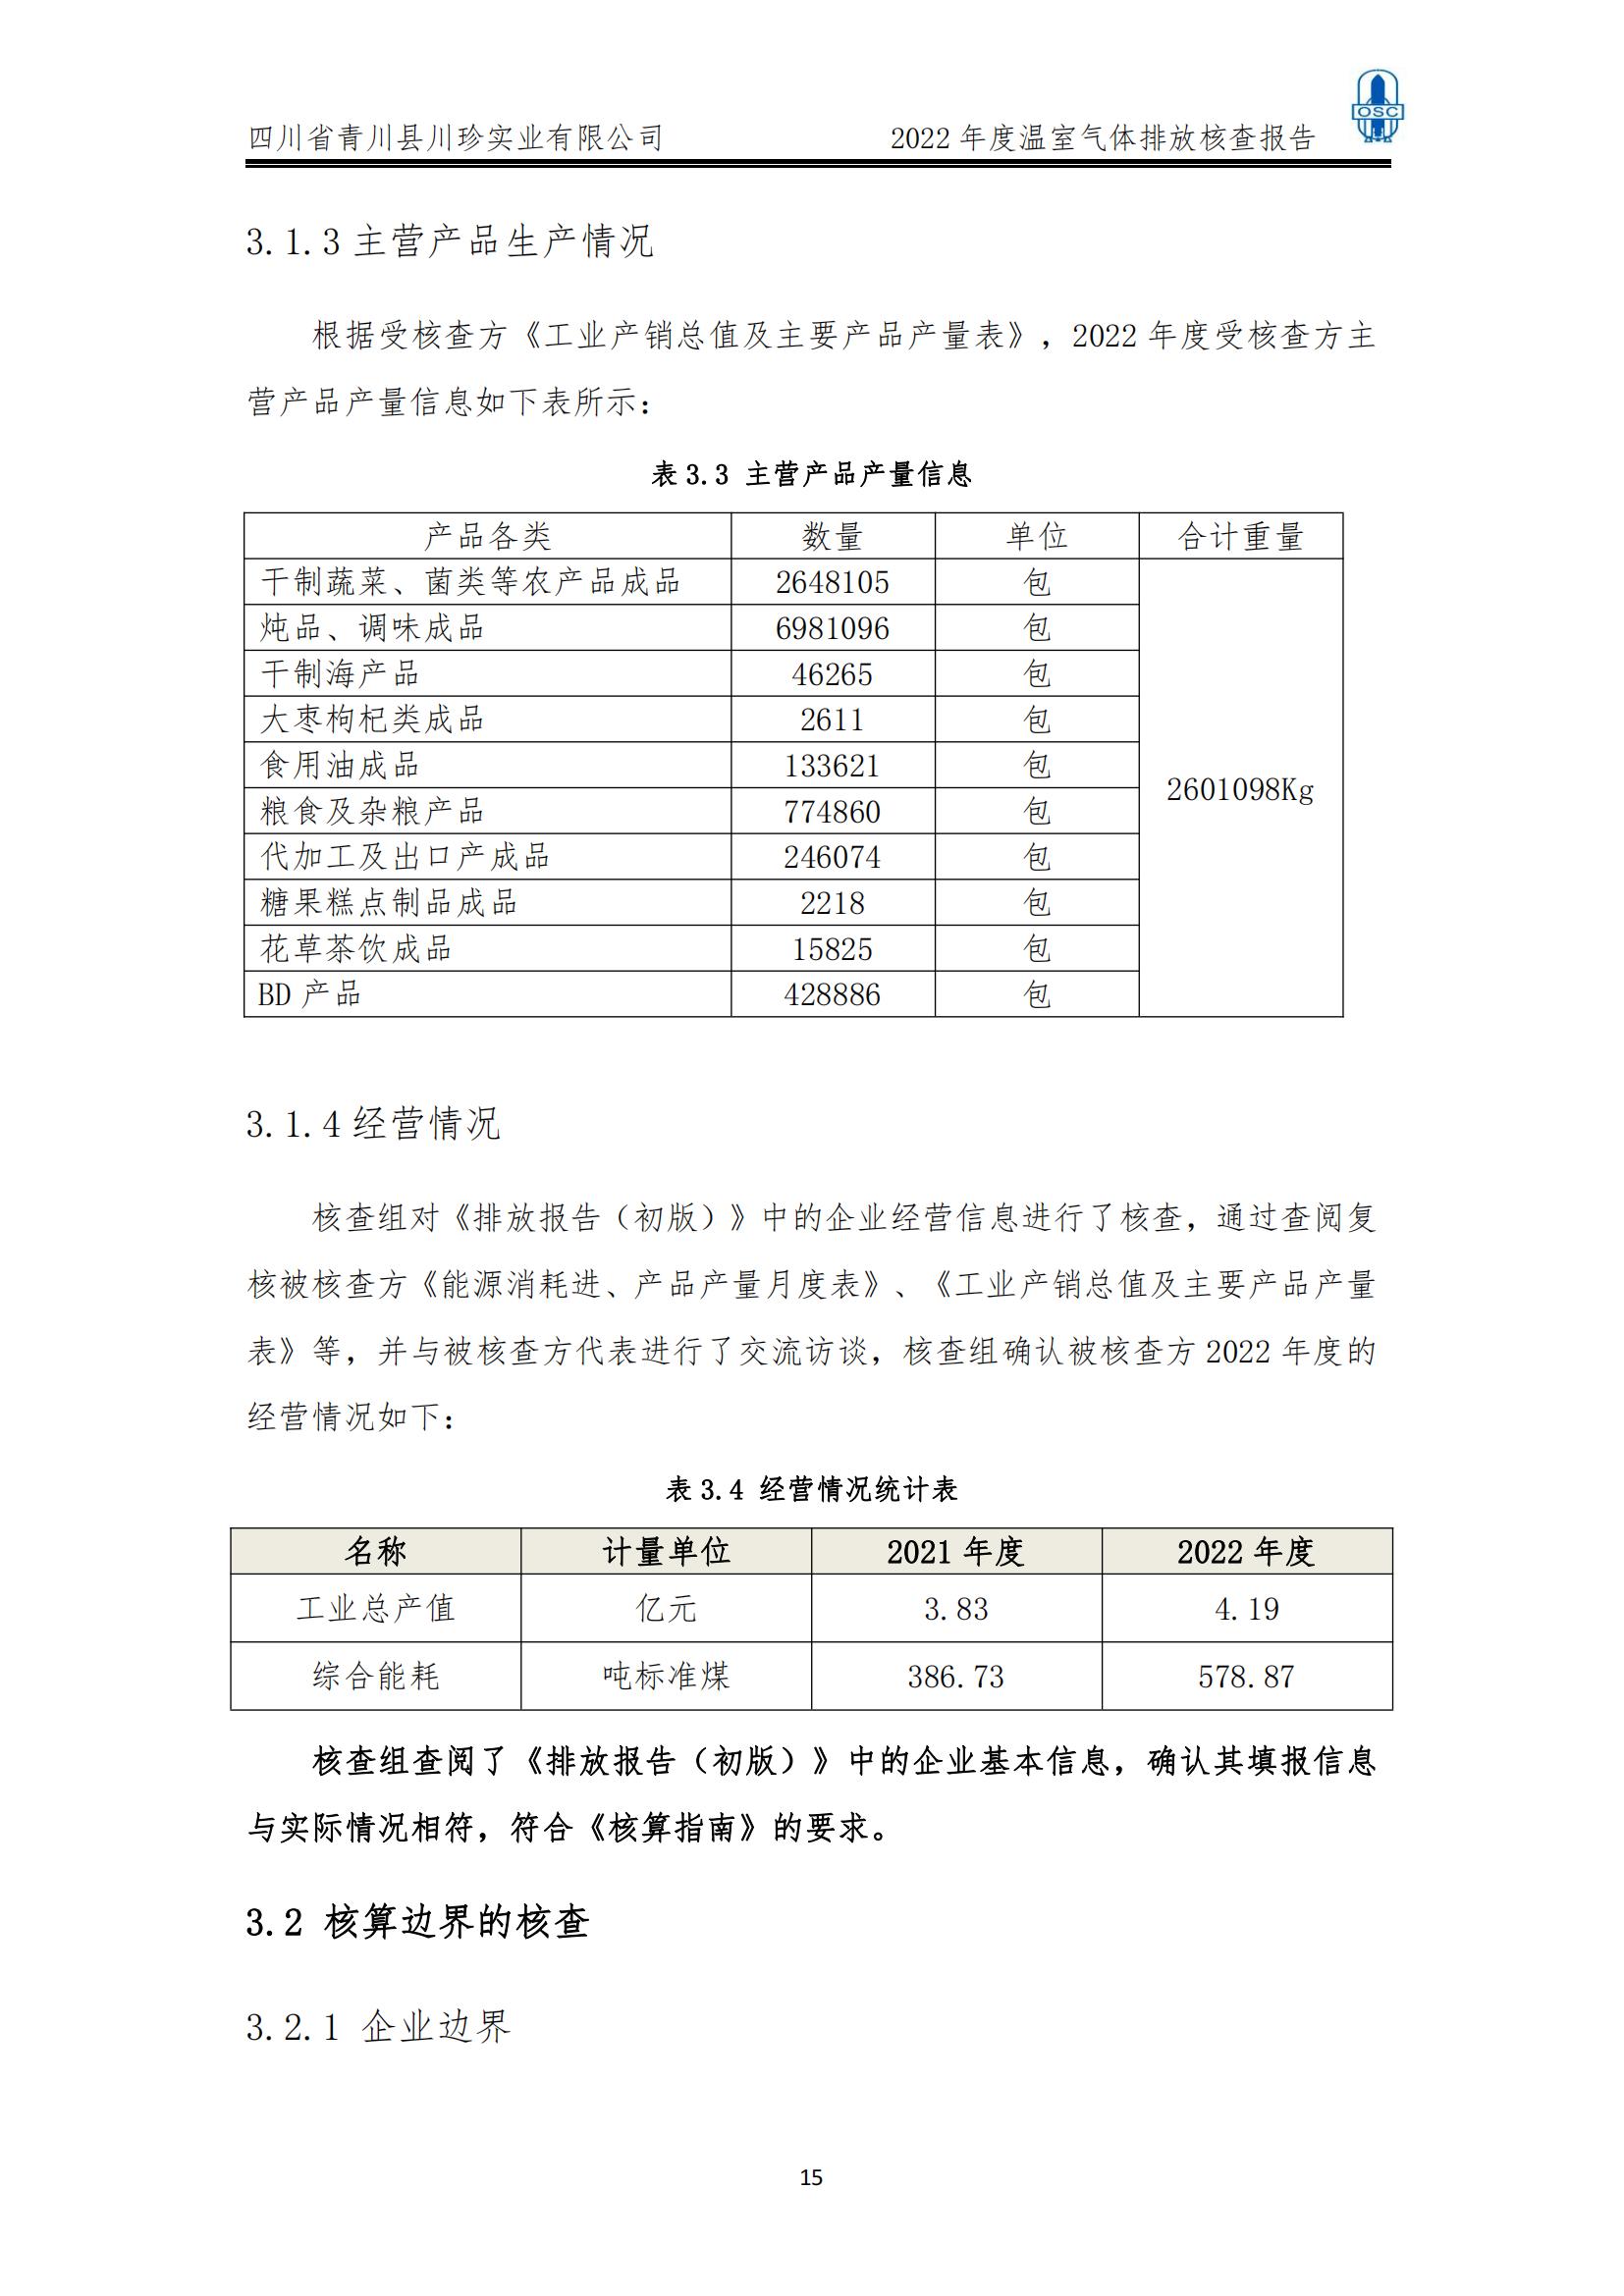 2022年度温室气体核查报告(四川省青川县川珍实业有限公司(图16)